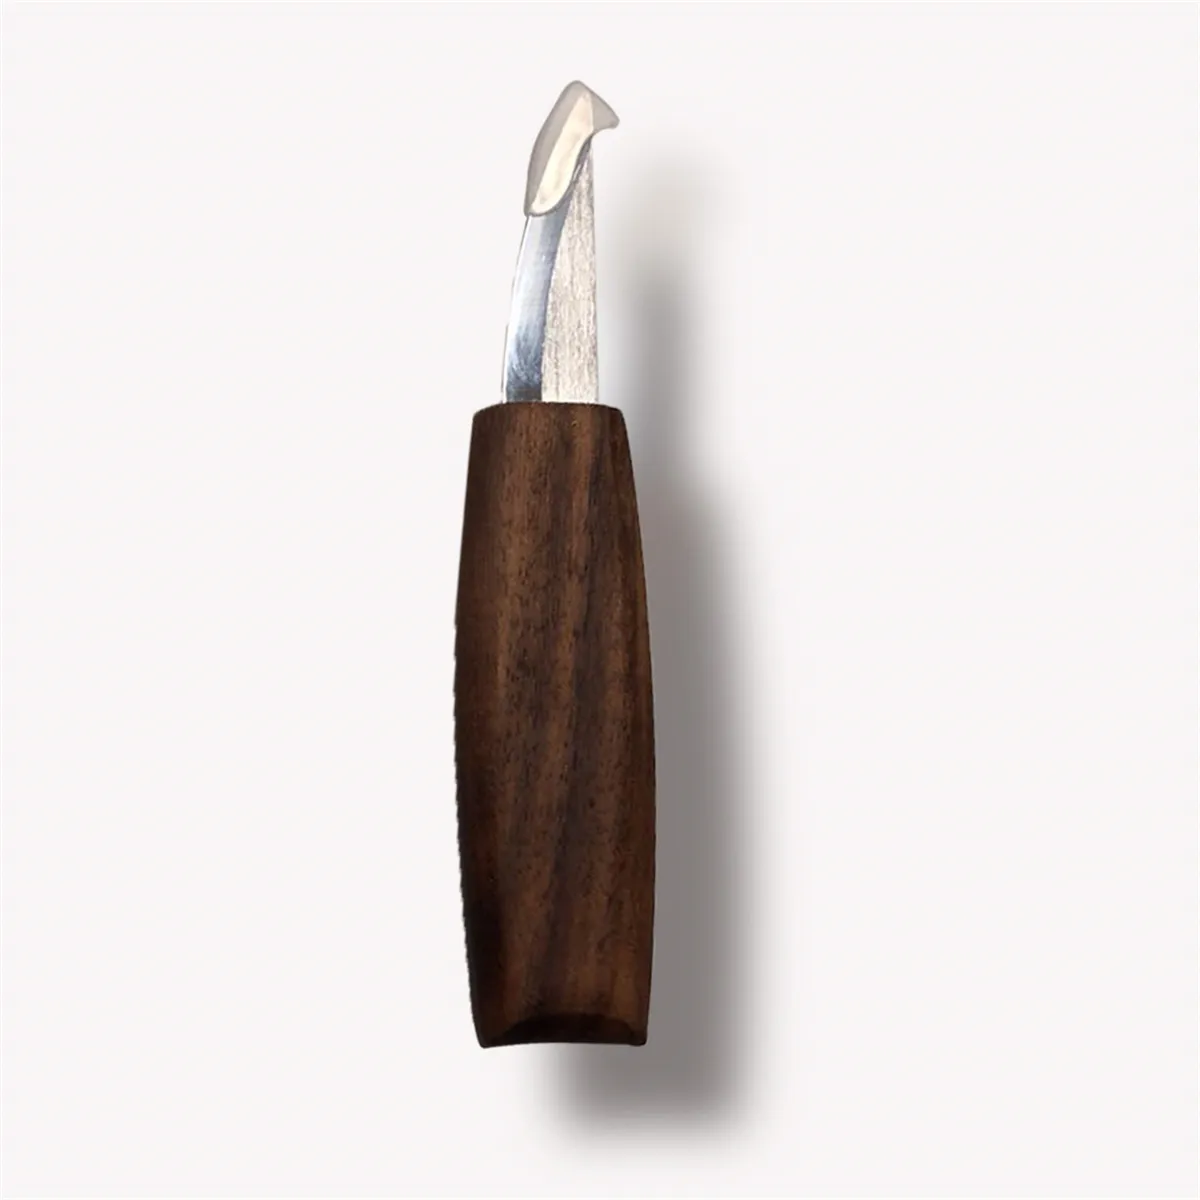 Drillpro 7 шт. нож для резьбы по дереву стамеска для работы с деревом резчик для резьбы по дереву набор инструментов высокопрочный зацепленный резак для отбеливания